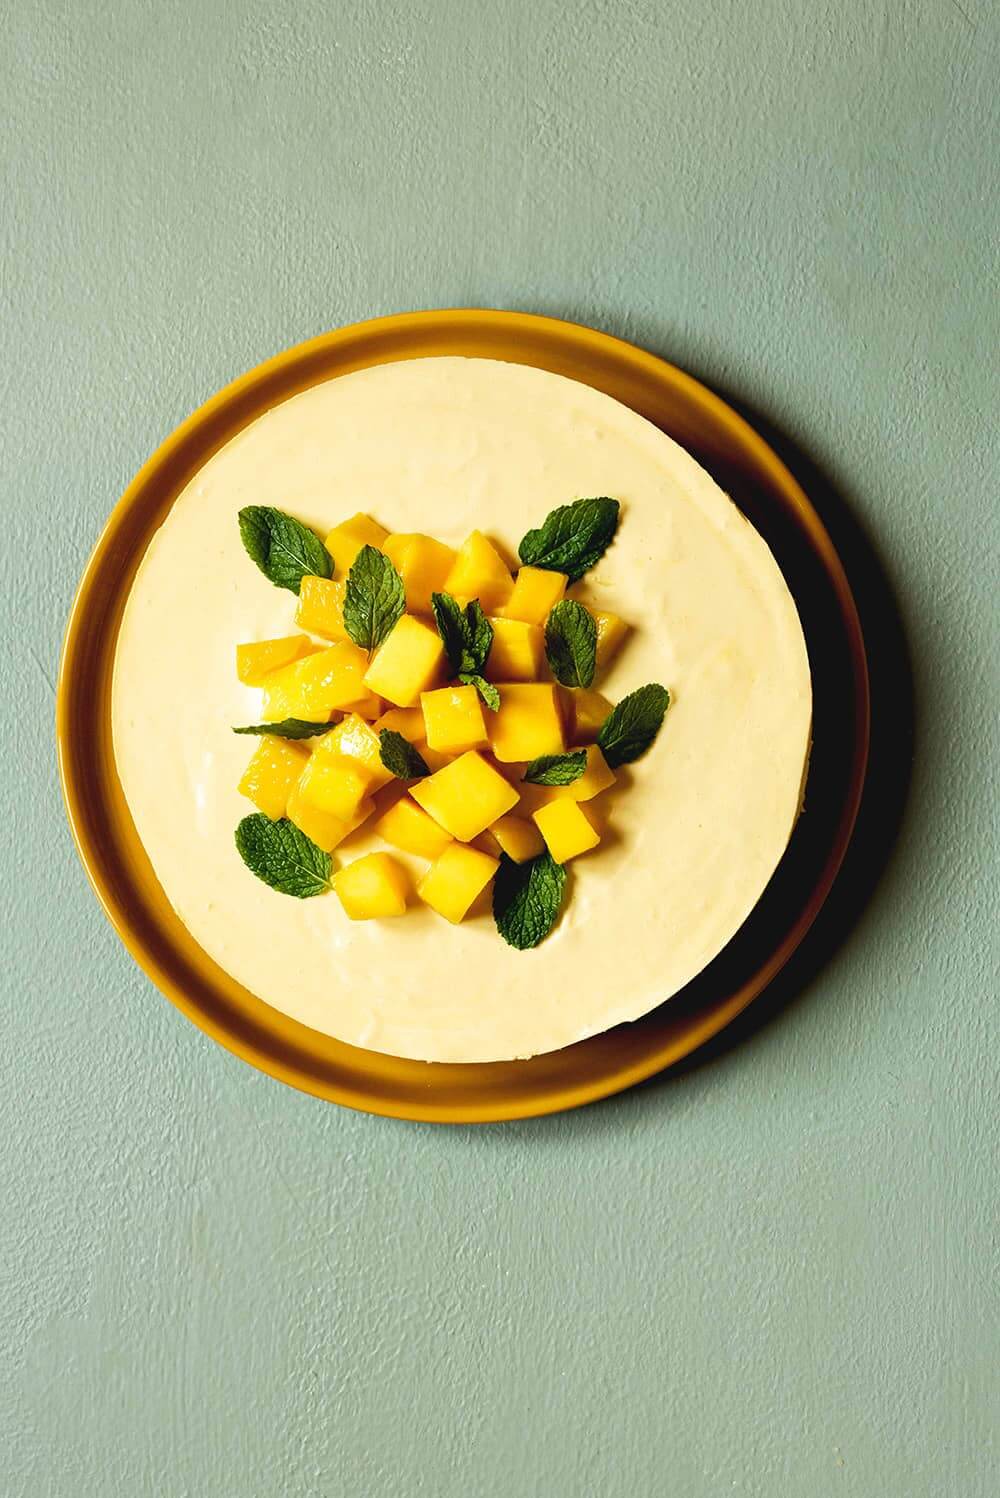 En una superficie verde, está un plato amarillo. En el plato tarta de mango y mascarpone. El postre está decorado con mangos frescos. La tarta está sin cortar. El postre está decorado con mangos frescos.